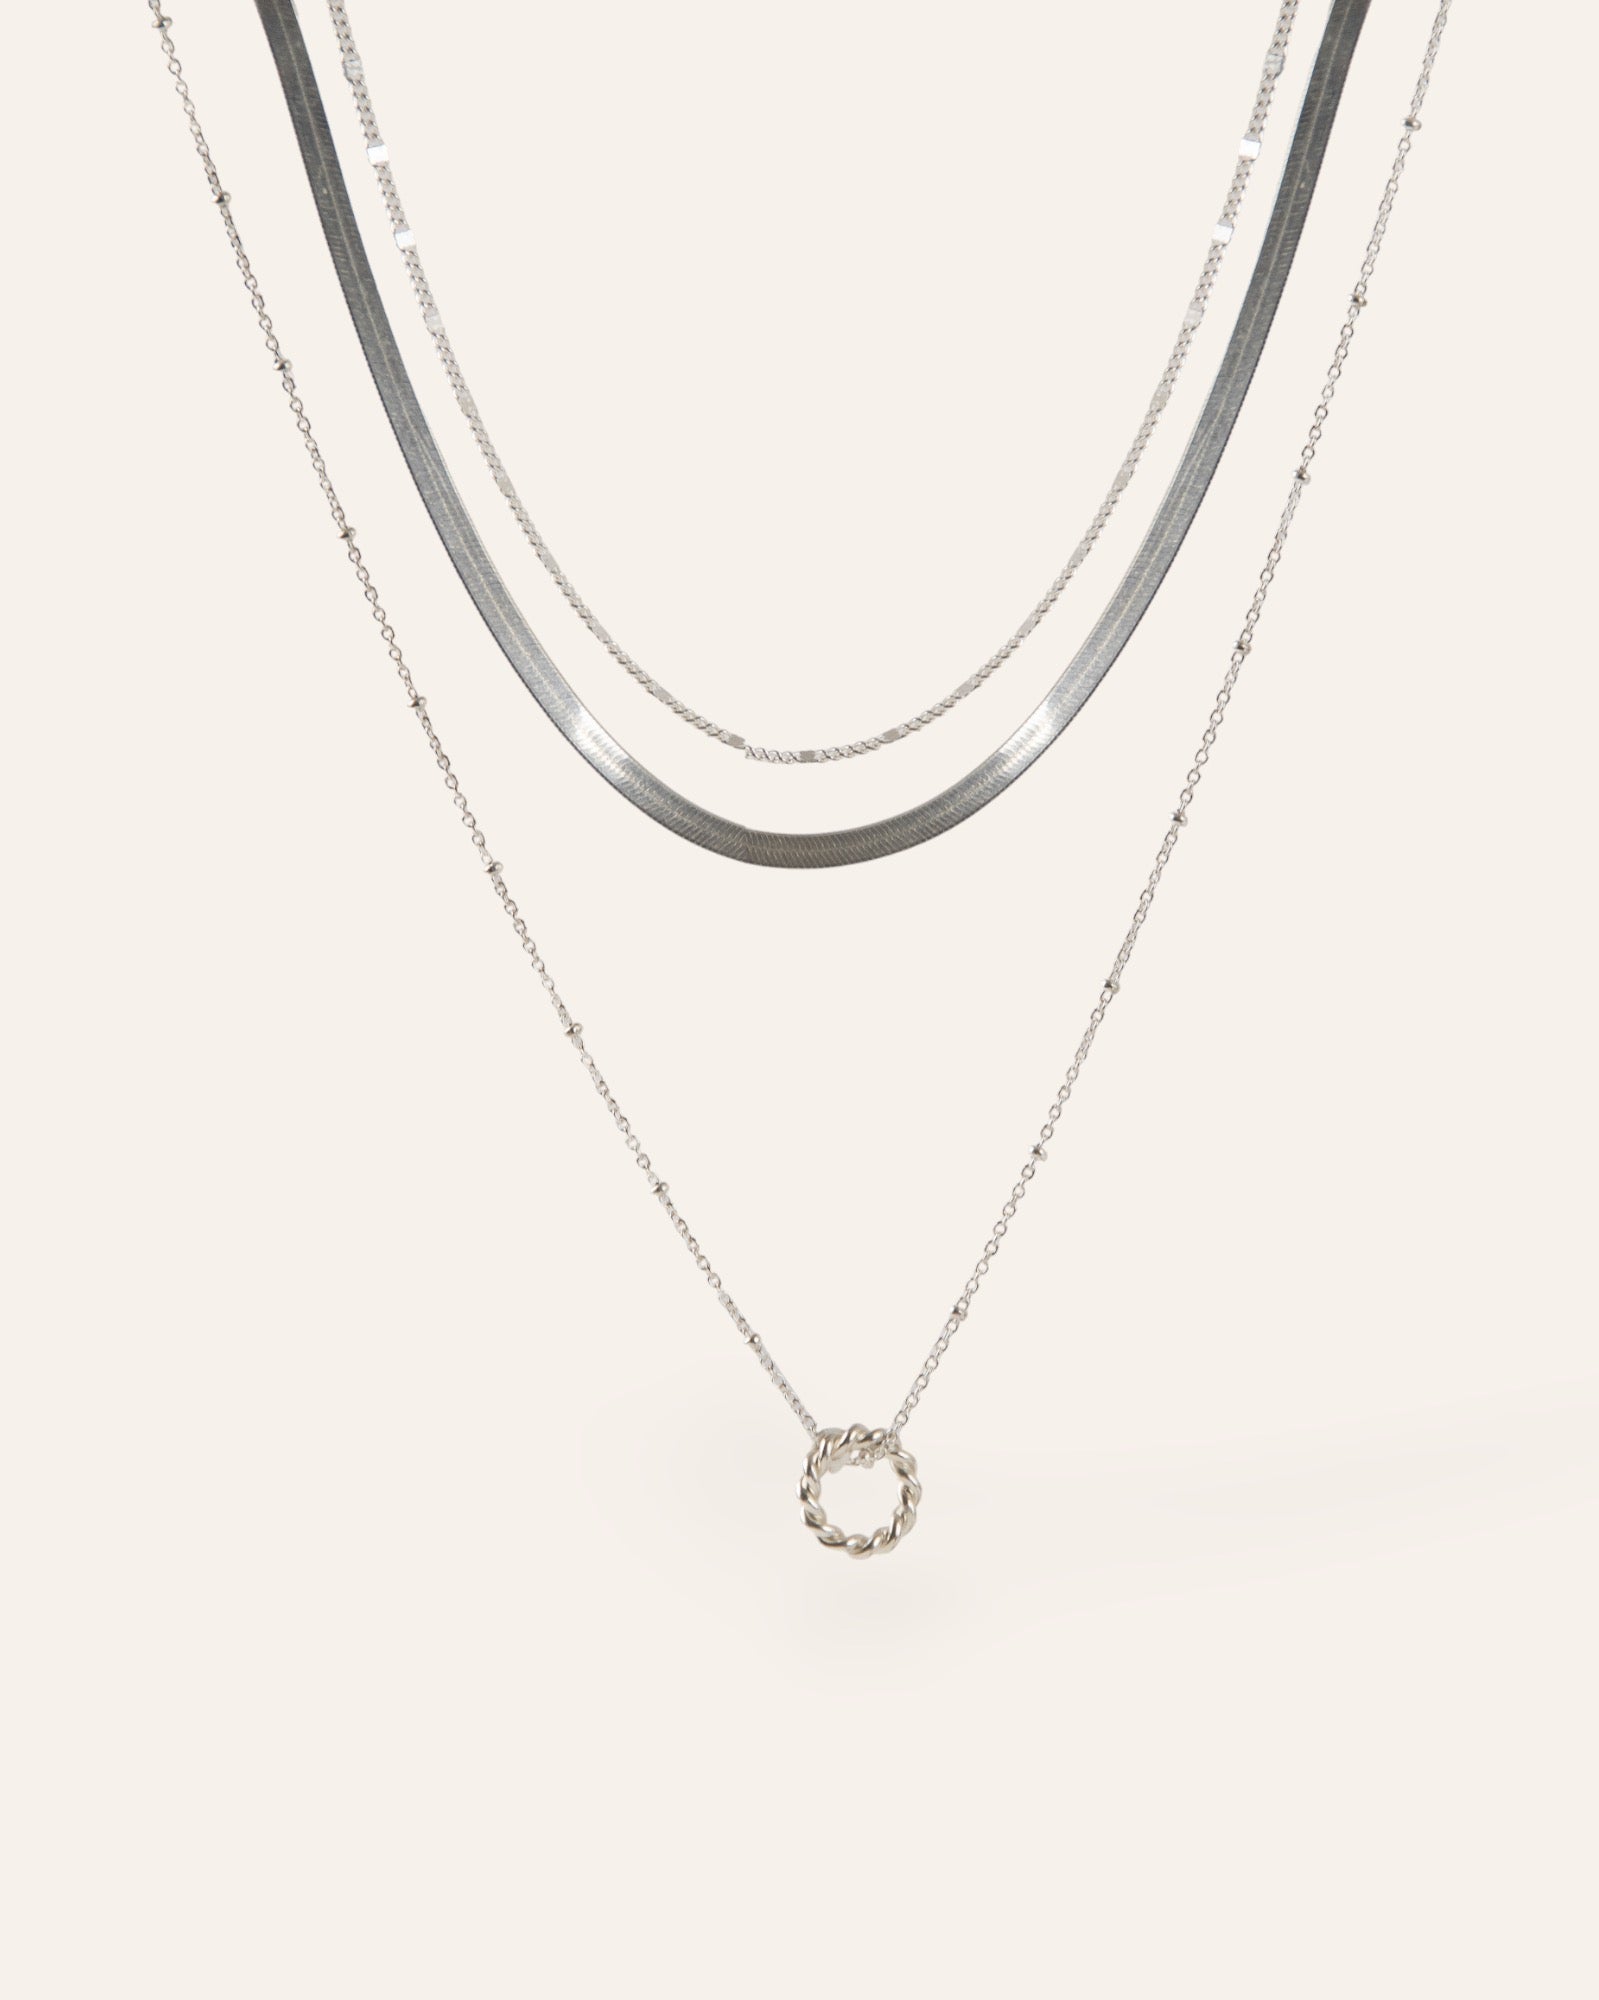 Composition de trois colliers, avec un collier en chaîne plate, un collier en chaîne de type gourmette, et un collier en chaîne boule avec un pendentif en anneau torsadé, en argent massif 925 made in France. 